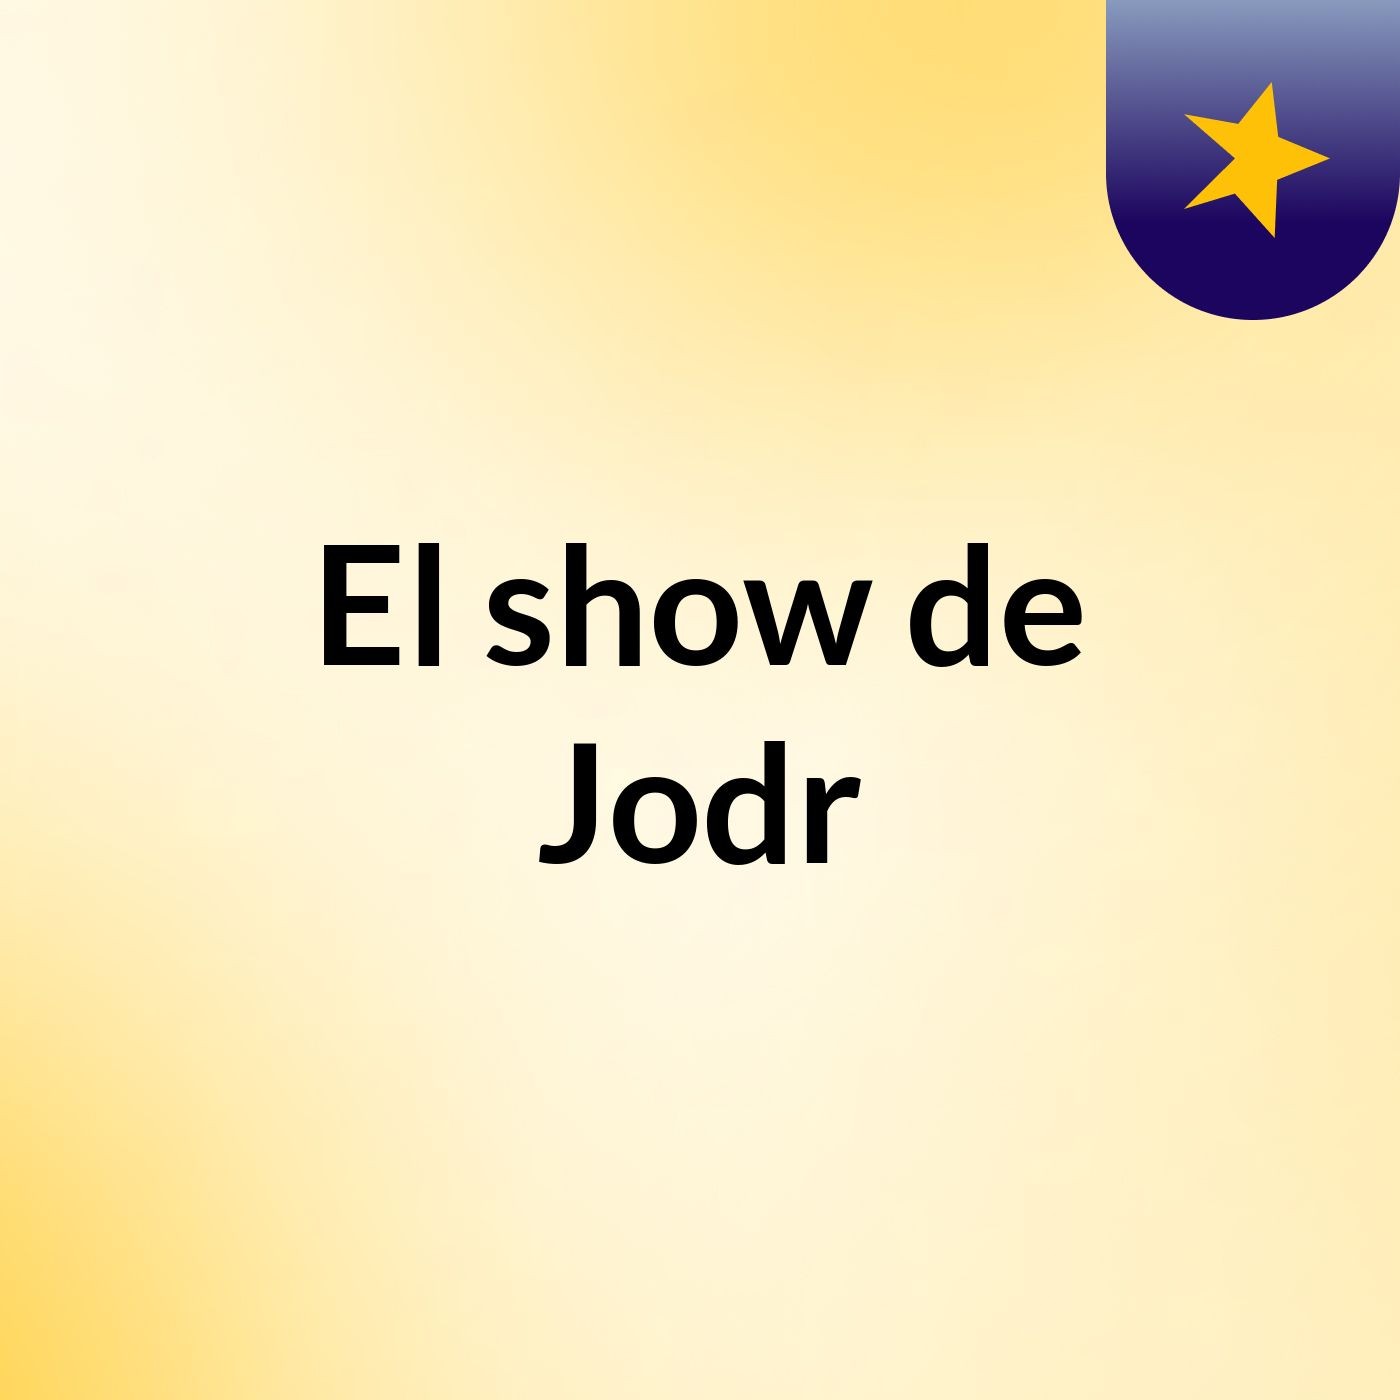 El show de Jodr